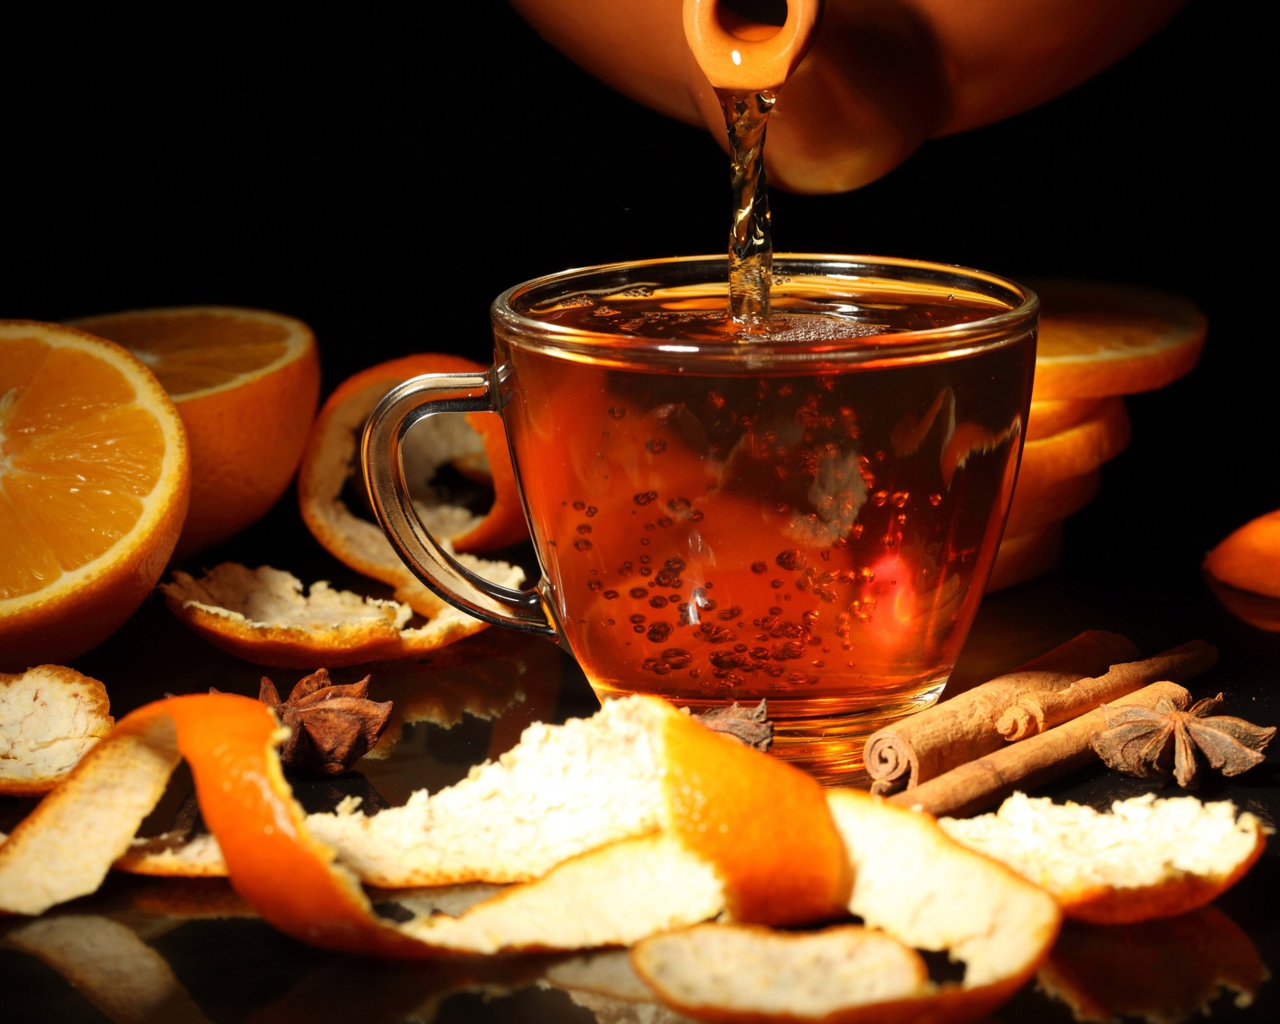 Стеклянная чашка с чаем на столе с апельсинами и корицей